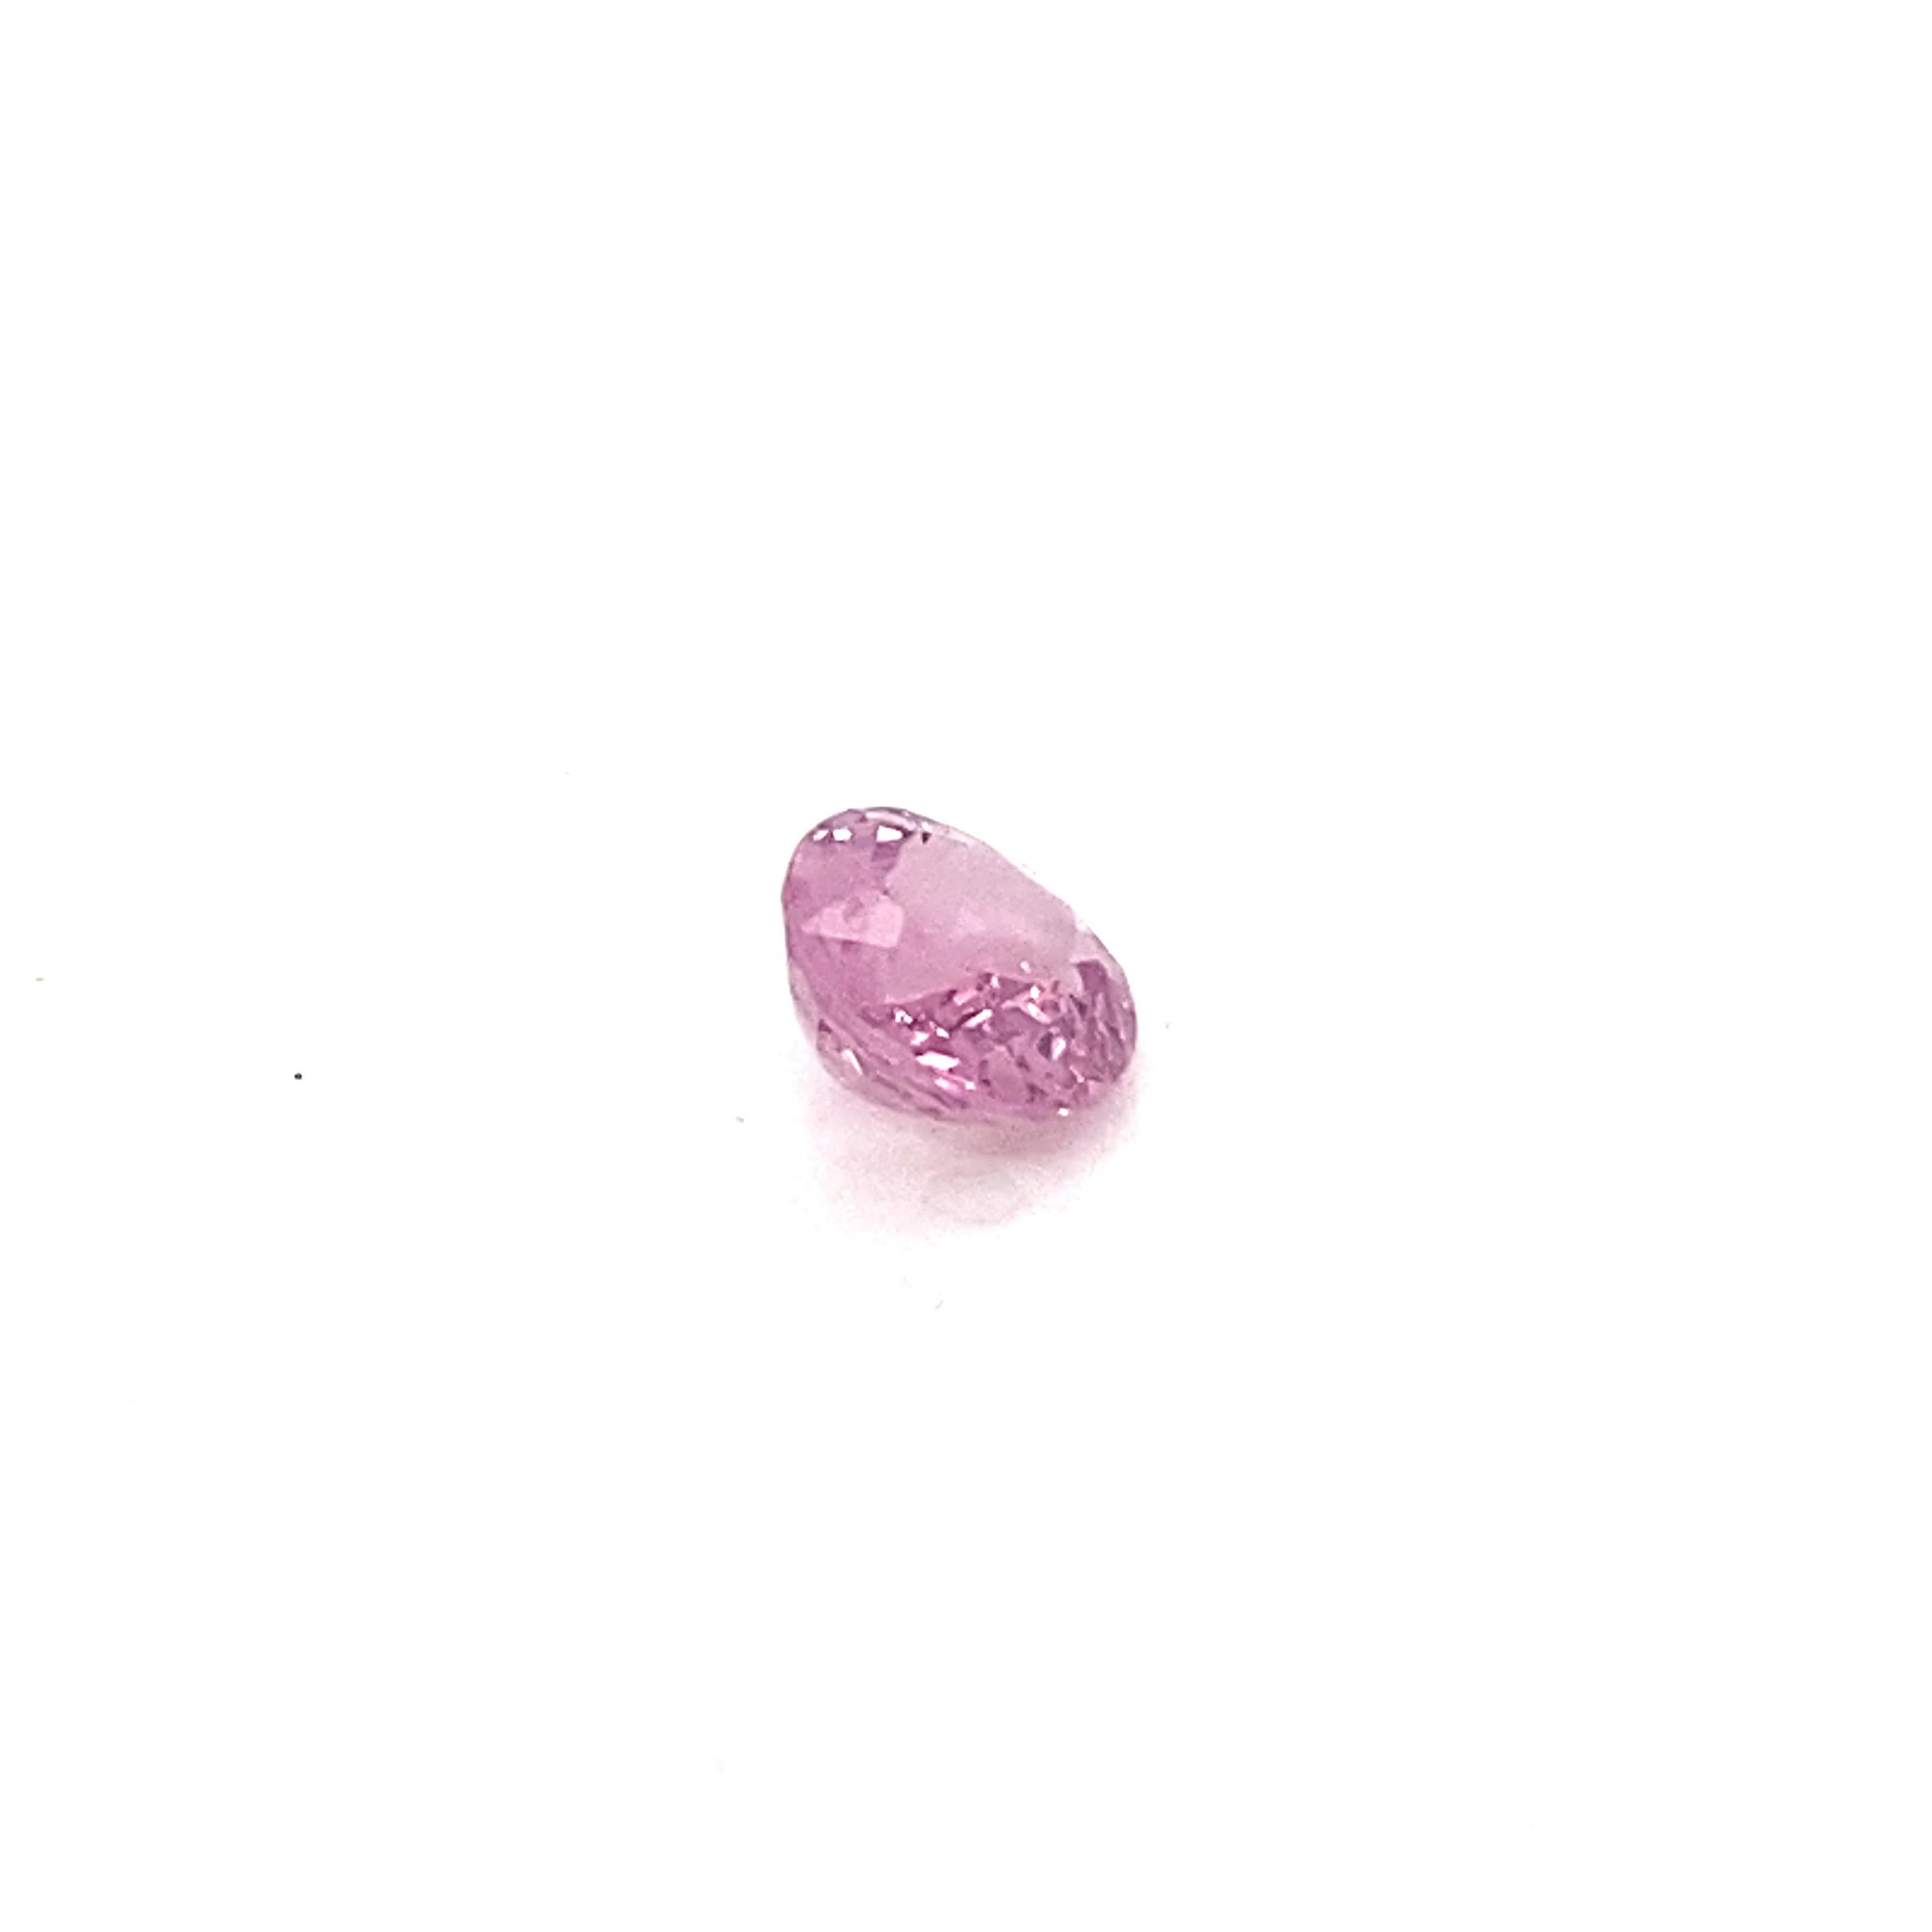 2.0 Carat Oval Shape Natural Pink Spinel Loose Gemstone For Sale 9